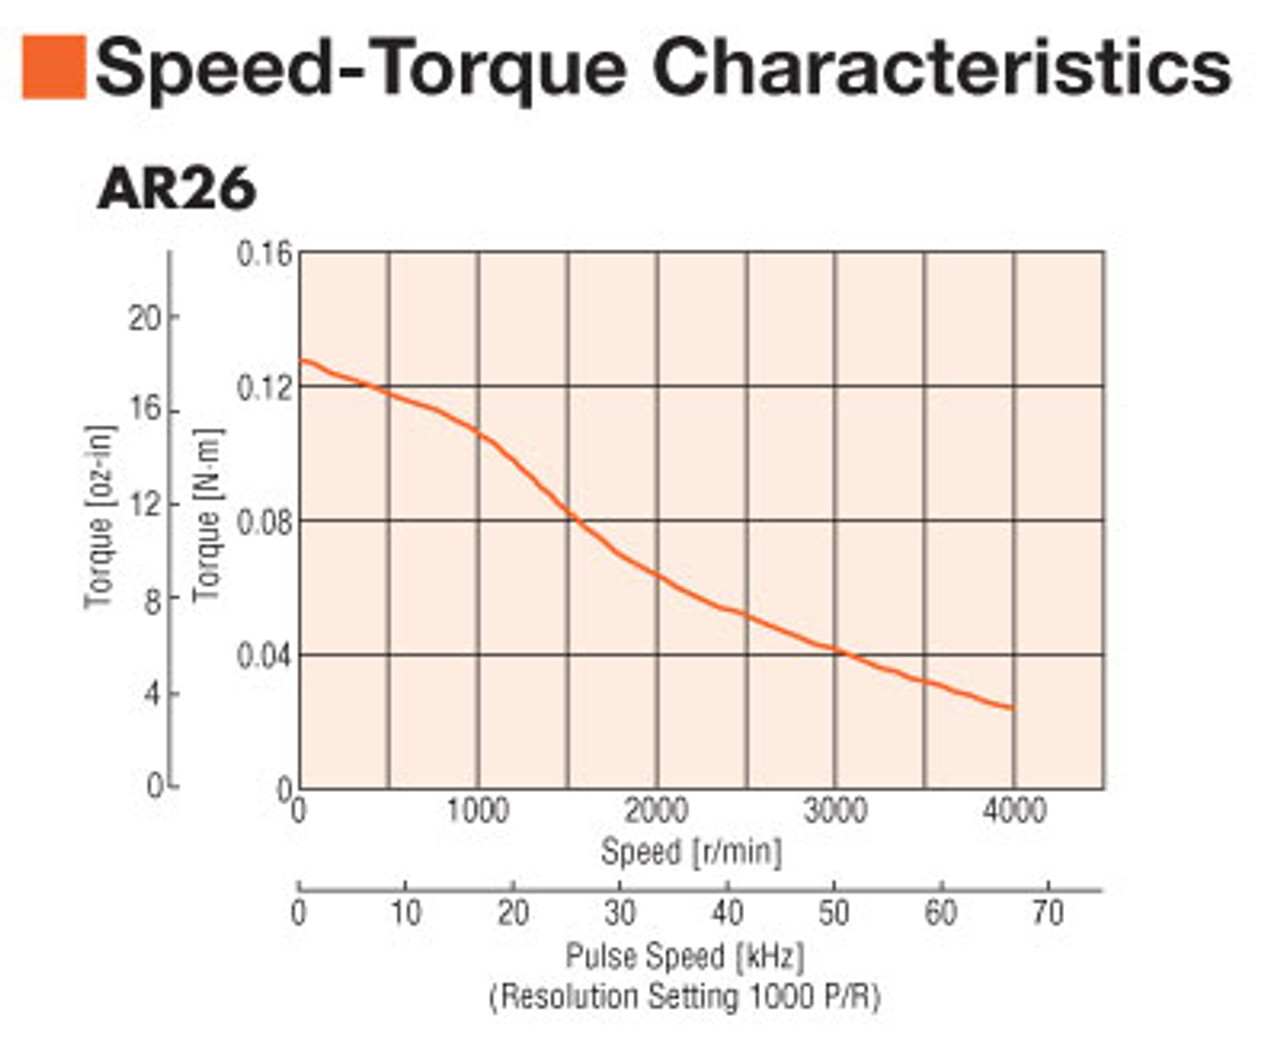 ARM26SAK - Speed-Torque